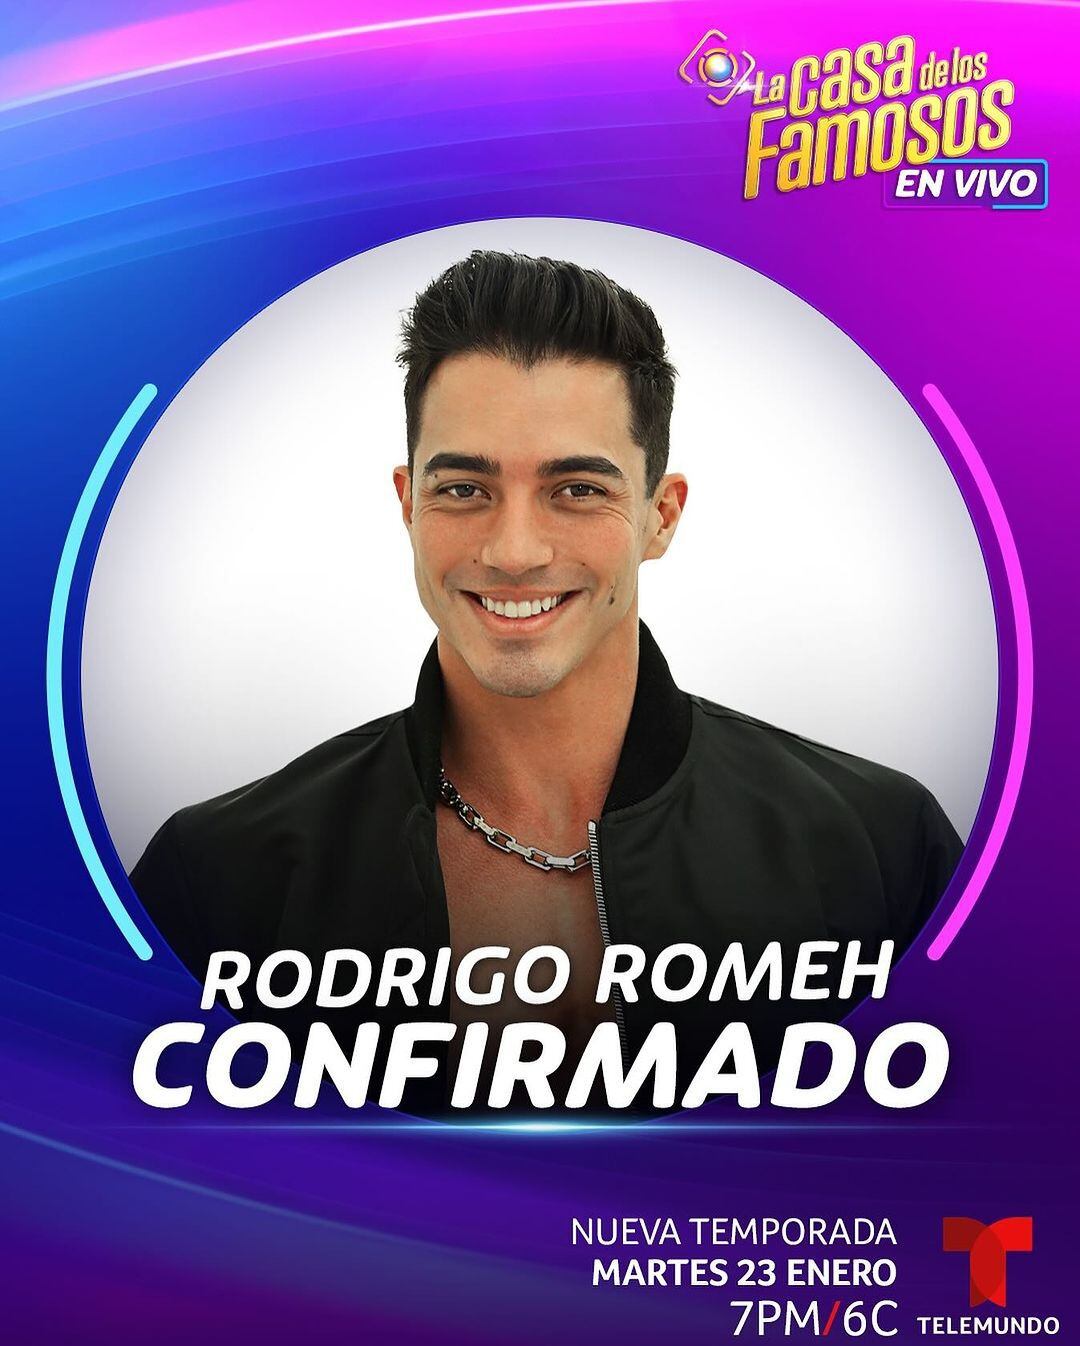 El mexicano Rodrigo Romeh también estará encerrado junto a otros 22 famosos en la nueva temporada del programa de Telemundo (Foto: Telemundo)